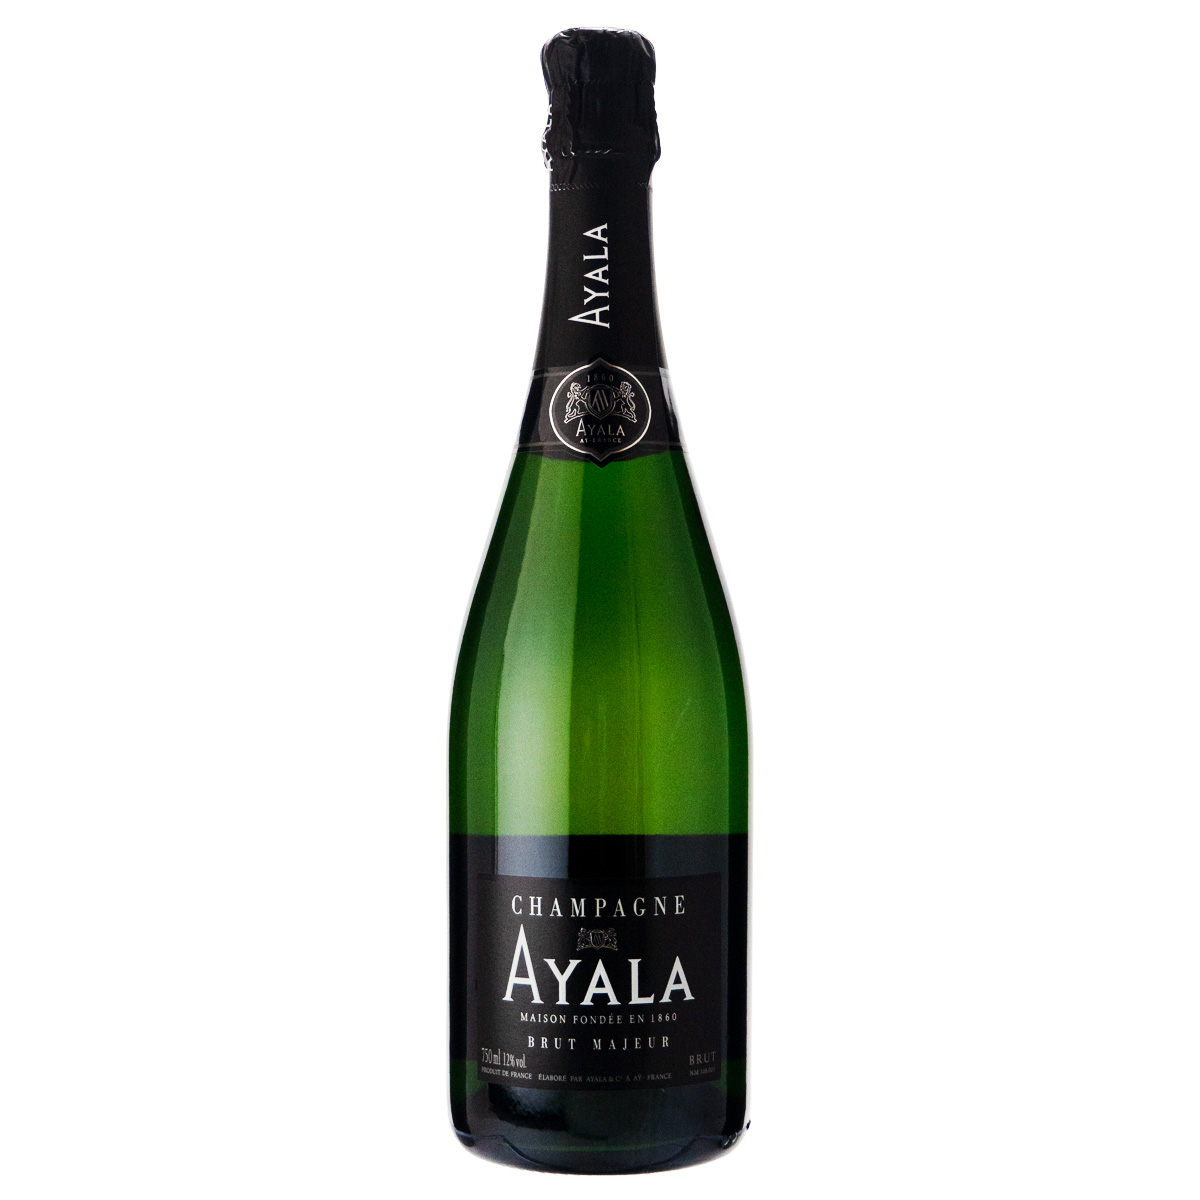 アヤラブリュットマジュール NV 750ml 正規品 シャンパン・スパークリングワインの商品画像